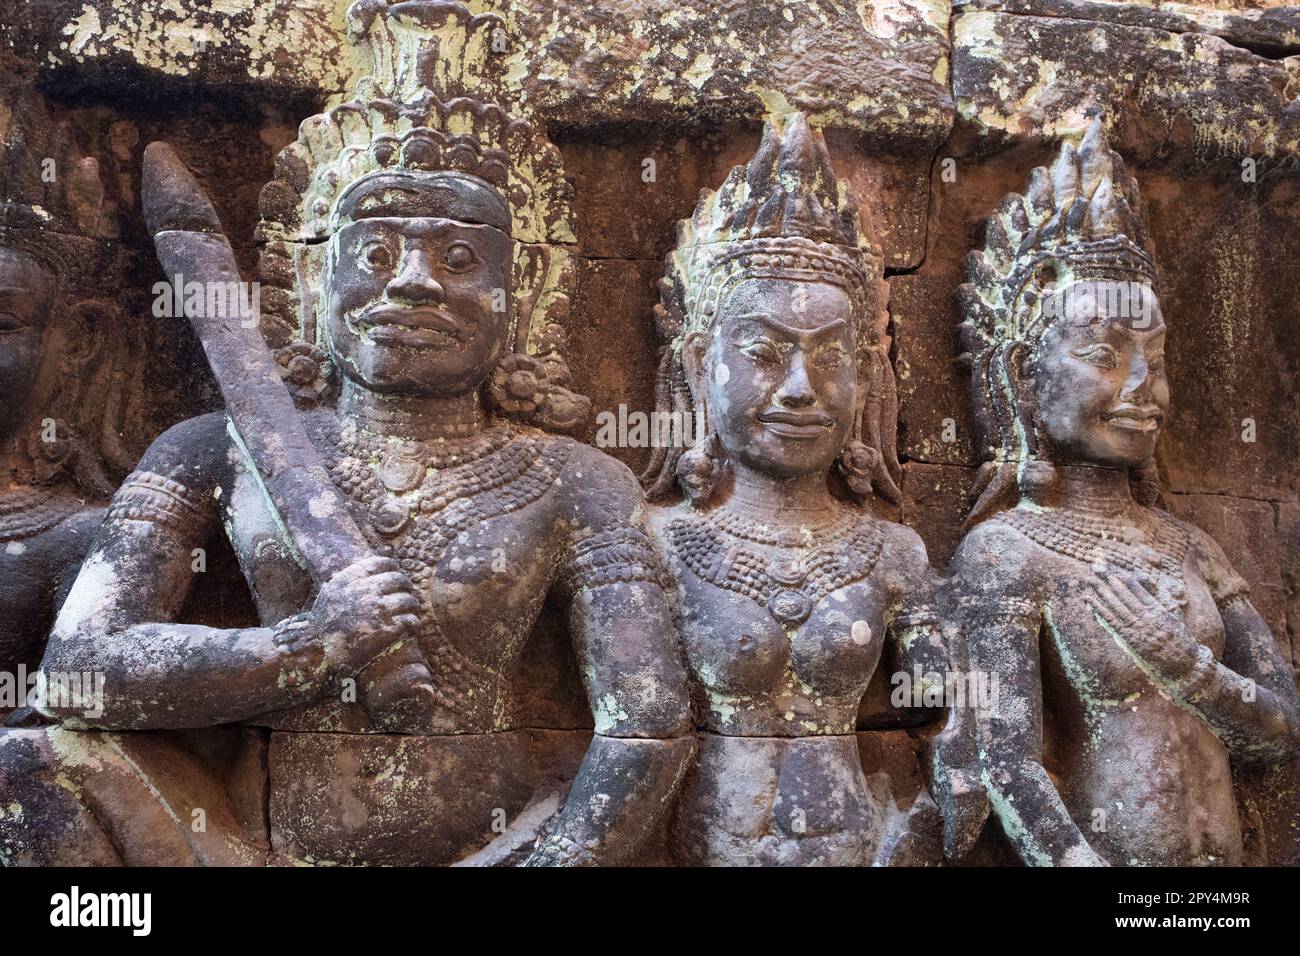 Cambodge: Souverain et consorts sur un bas-relief intérieur de la terrasse du Roi Leper, Angkor Thom. La terrasse du Roi Leper a été construite pendant le règne du Roi Jayavarman VII Angkor Thom, signifiant "la Grande ville", est situé à un mile au nord d'Angkor Wat. Il a été construit à la fin du XIIe siècle par le roi Jayavarman VII, et couvre une superficie de 9 km², à l'intérieur desquels sont situés plusieurs monuments des époques antérieures ainsi que ceux établis par Jayavarman et ses successeurs. On croit qu'il a soutenu une population de 80,000 à 150,000 personnes. Banque D'Images